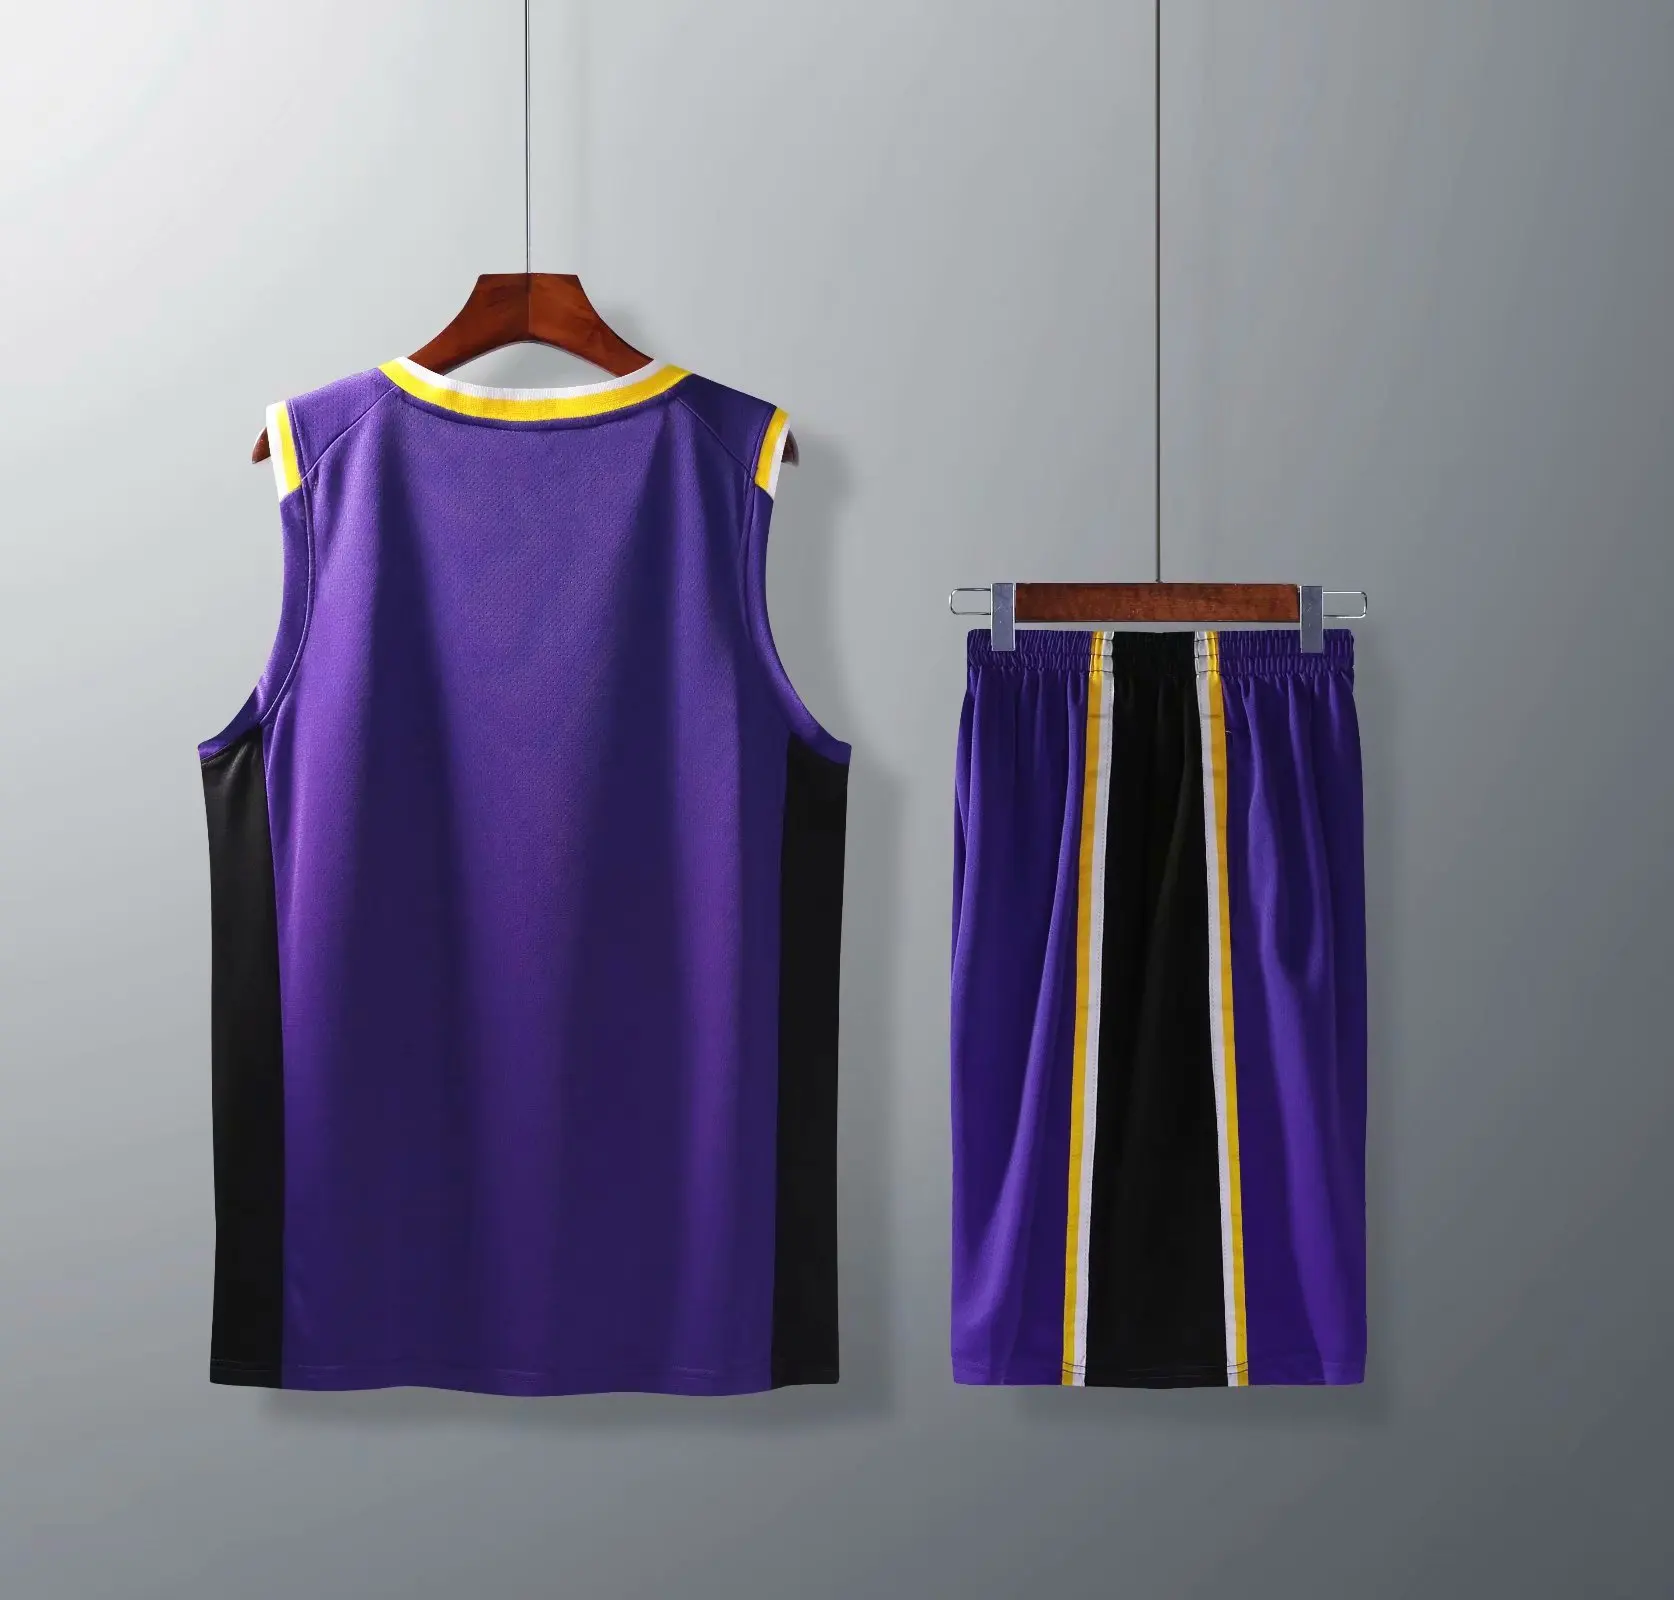 18-19 стиль Лейкерс НБА Баскетбол Одежда Костюм Спортивная одежда Кастомизация индивидуального персонажа игры Джерси T